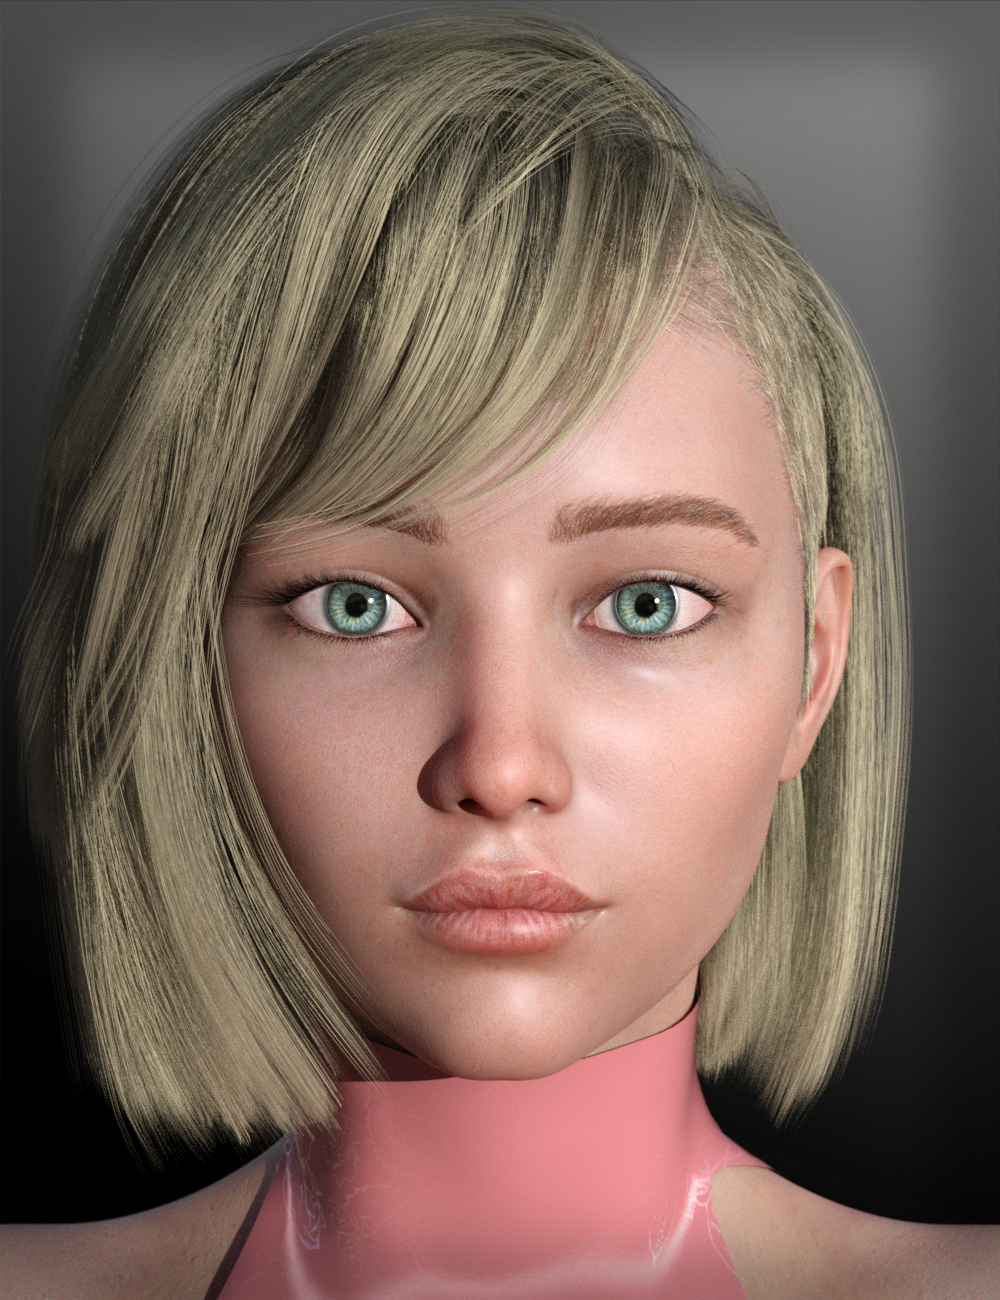 SY Facial Asymmetry Genesis 8 by: Sickleyield, 3D Models by Daz 3D